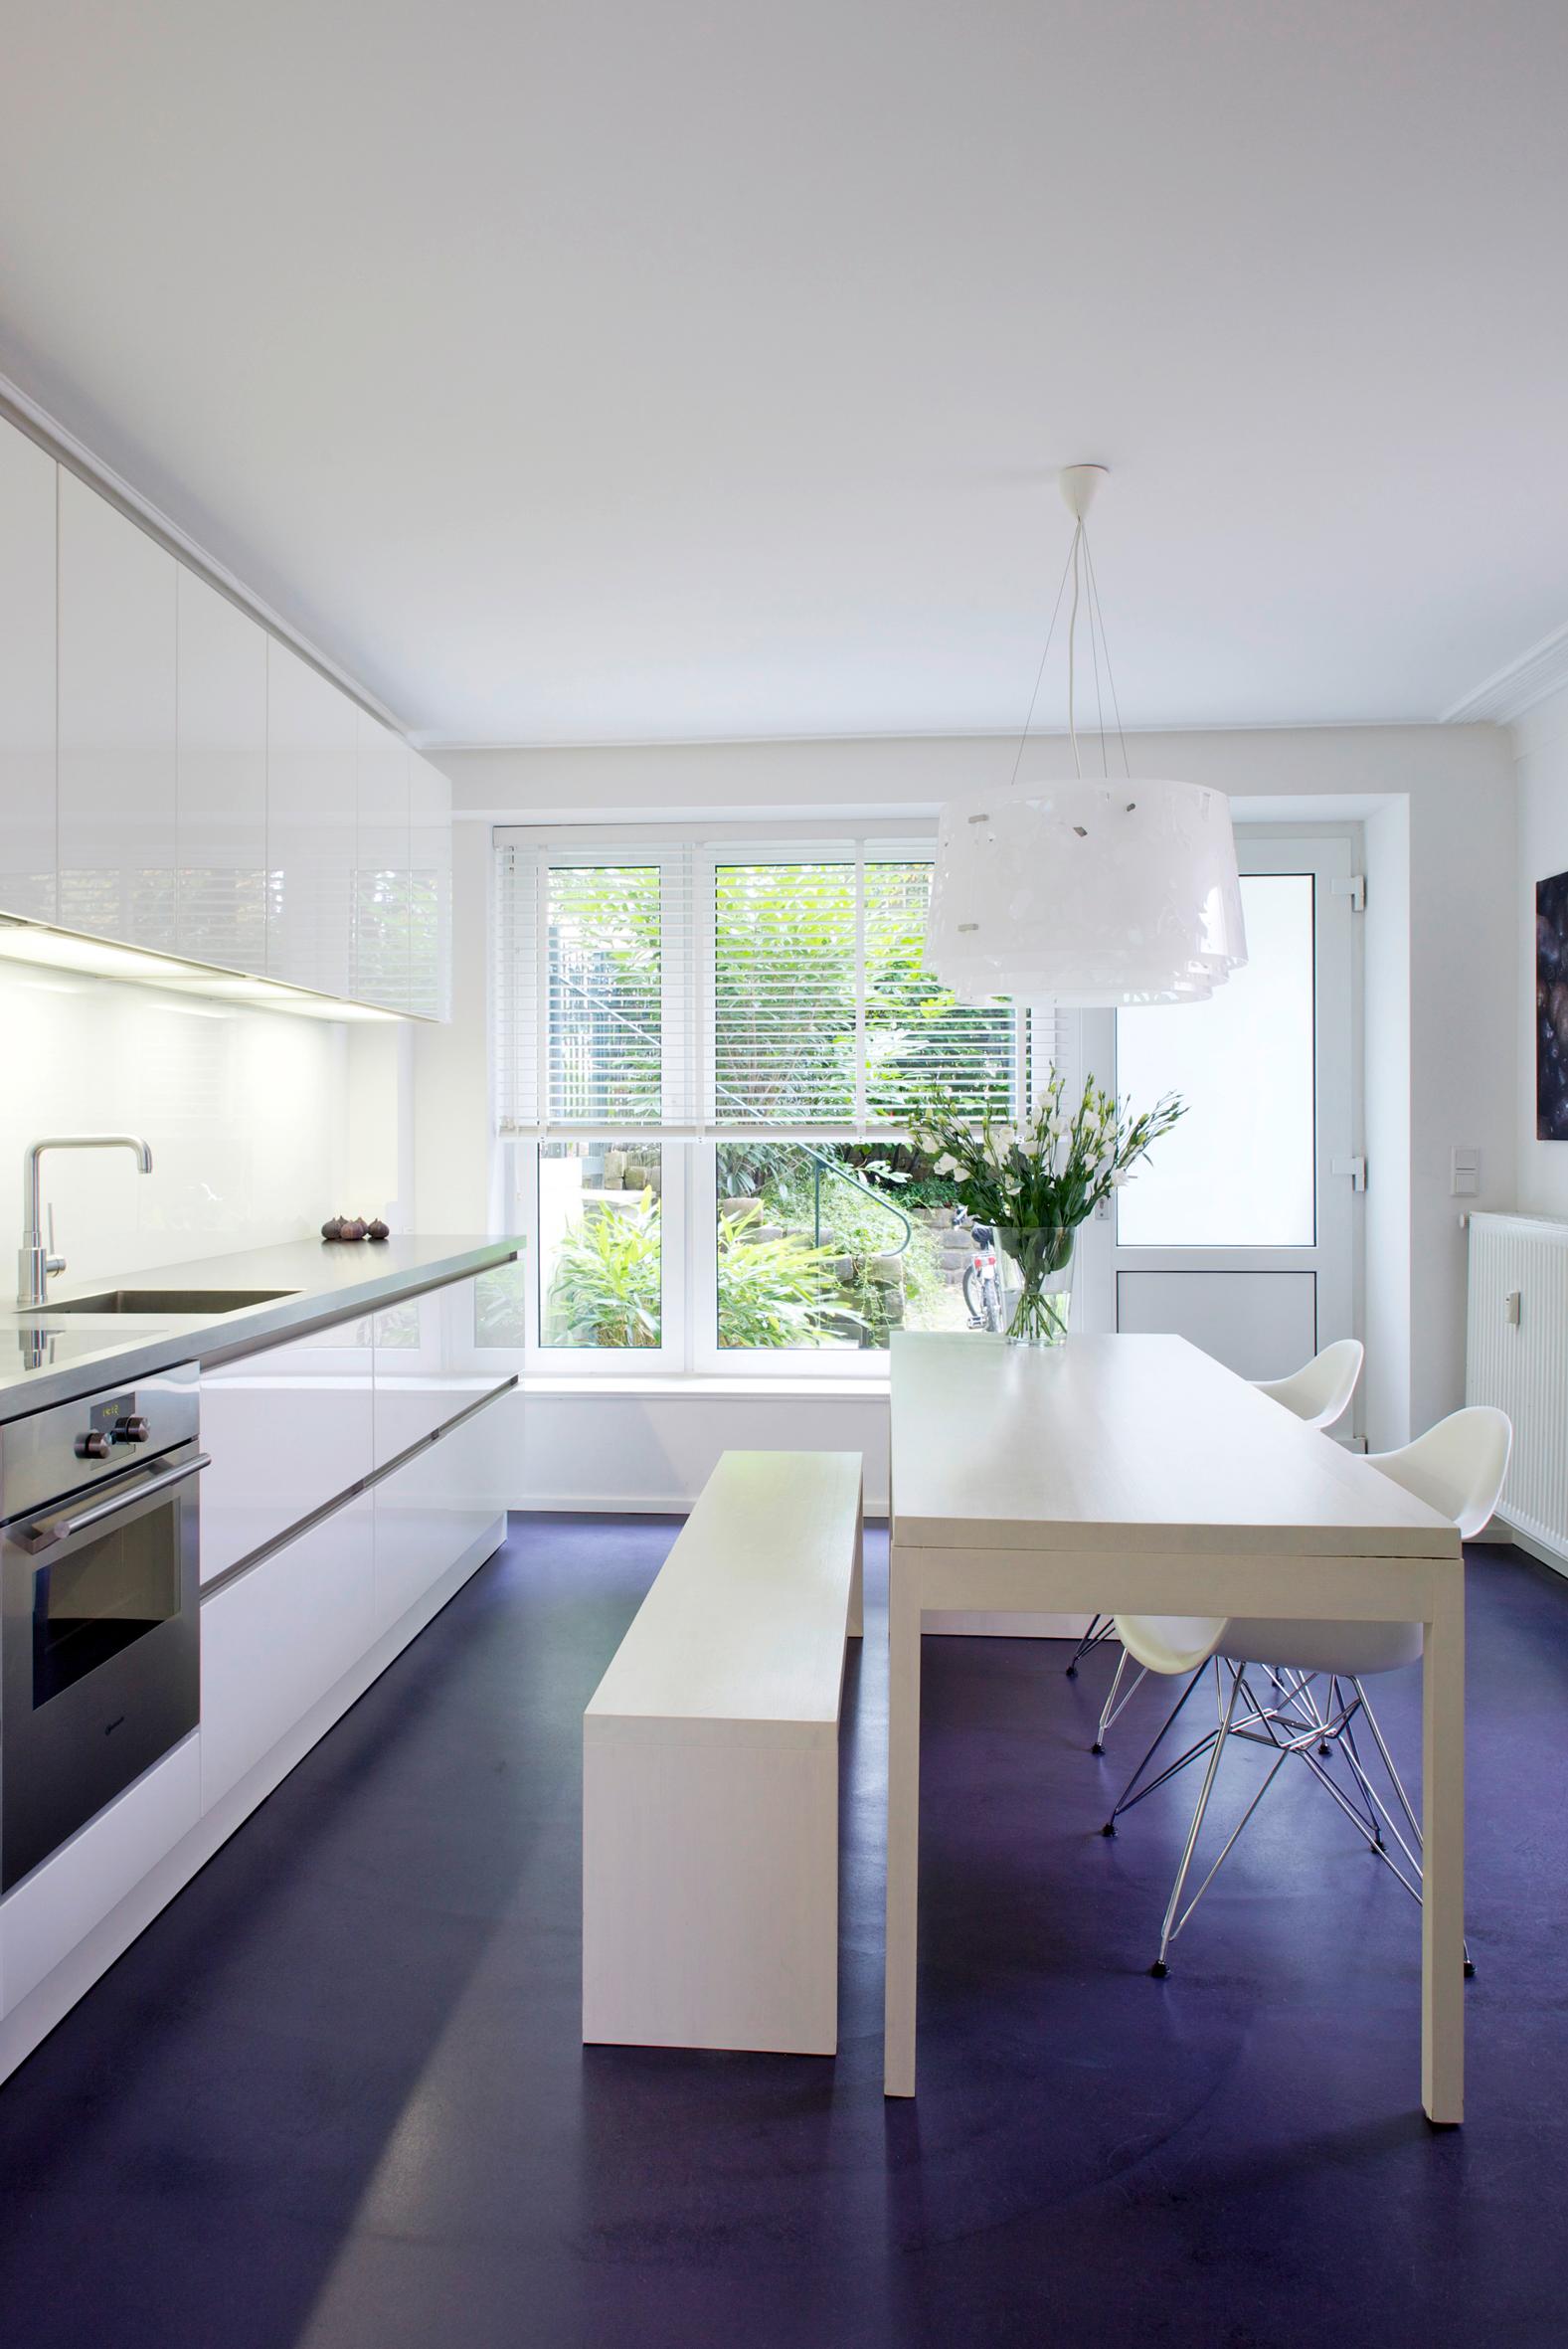 Moderne, weiße Küche mit farblich abgesetztem Fußboden #bodenbelag #esstisch #weißesitzbank #sitzbank #küchentisch #küchenbank #weißeküchemitdunklemfußboden ©burmester photography